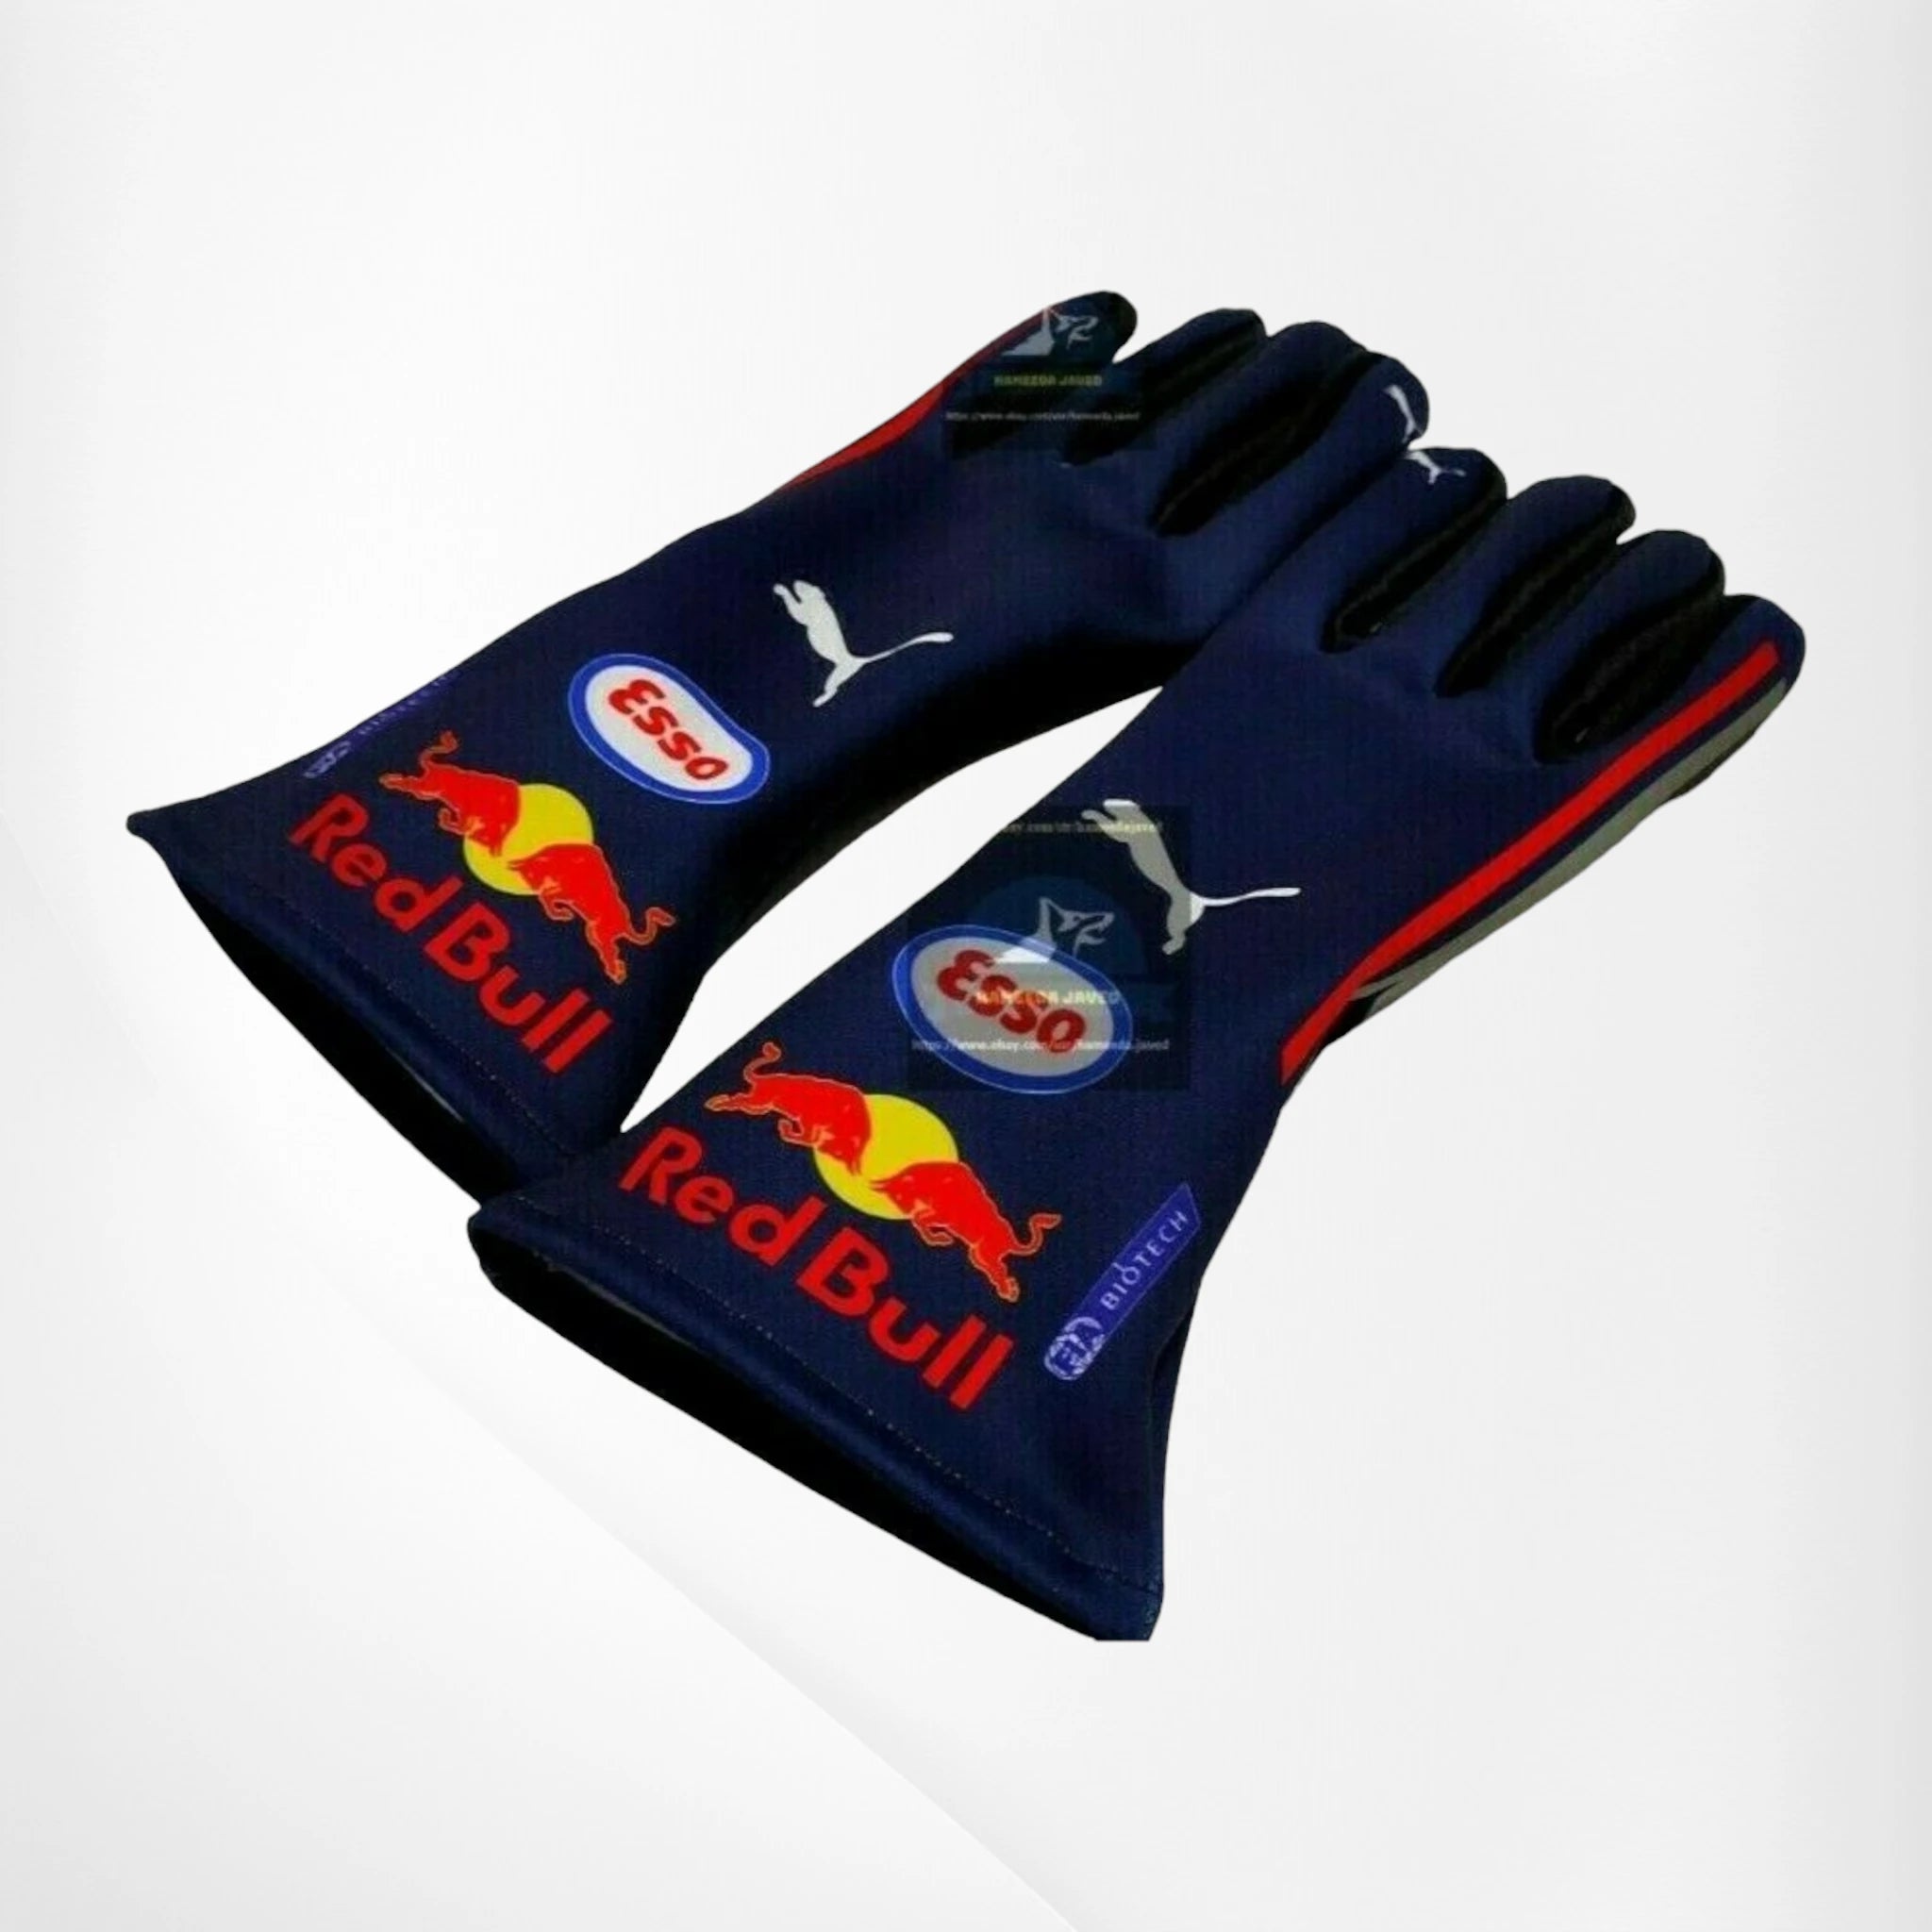 2019 Red Bull Max Verstappen F1 Race Gloves